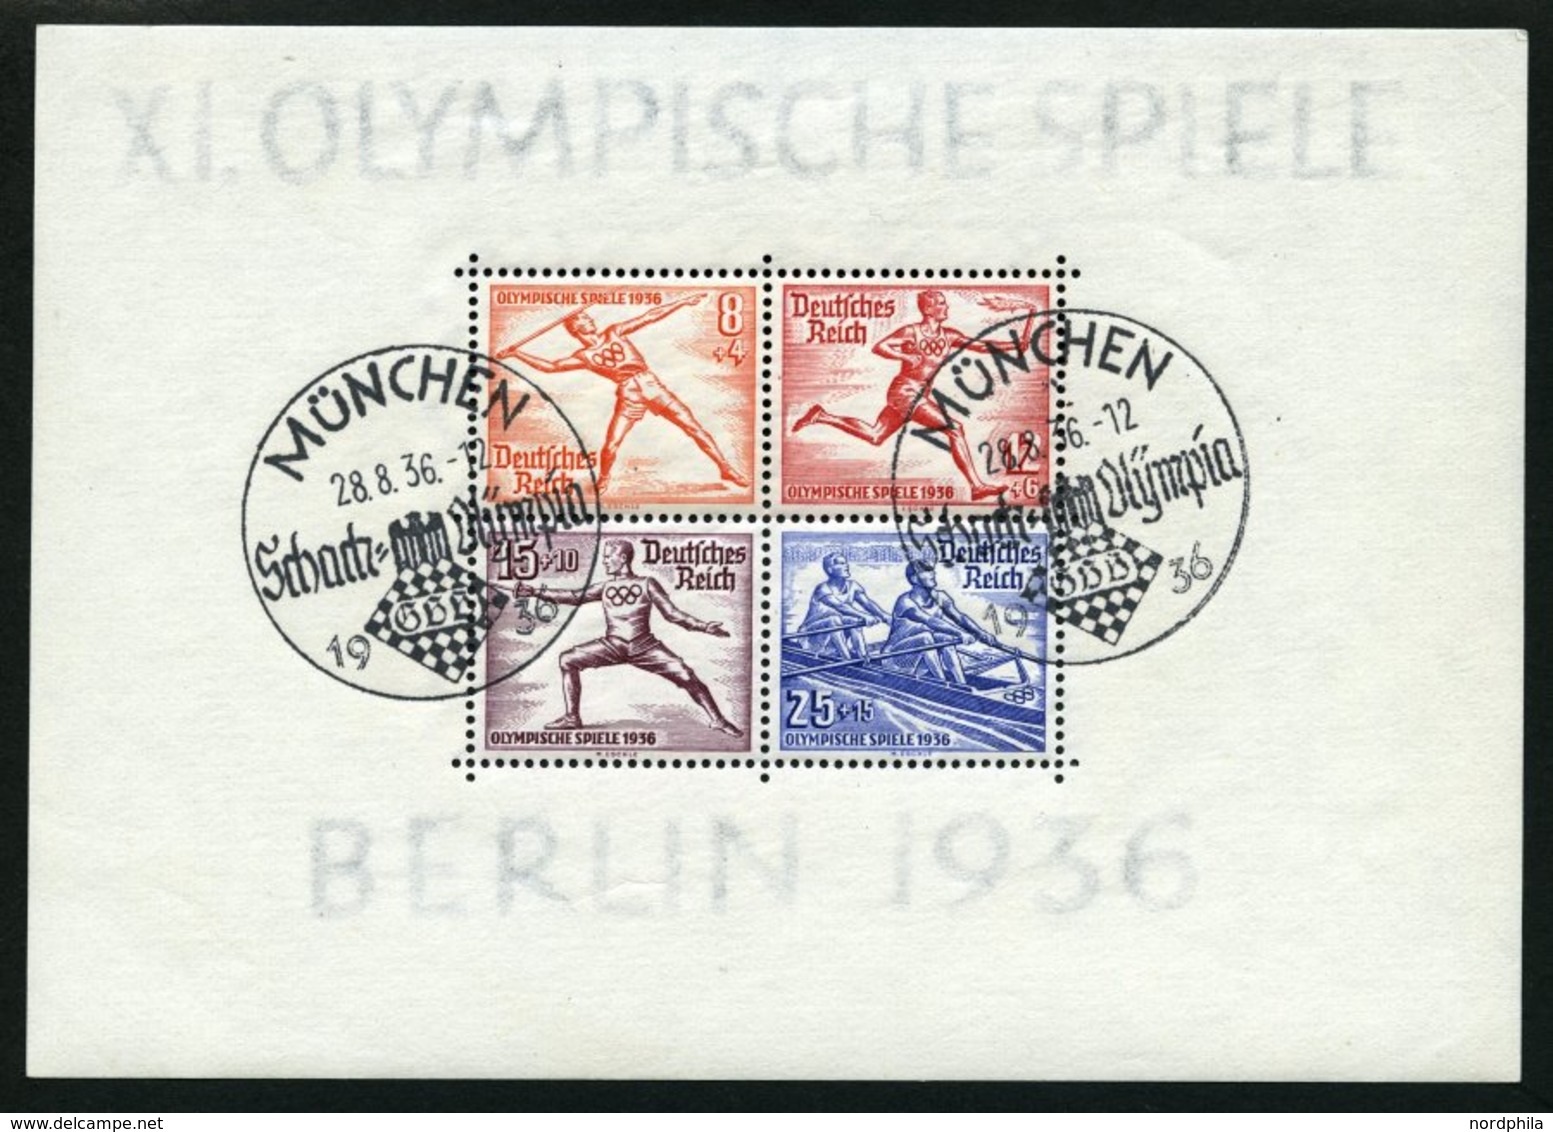 SAMMLUNGEN O, Gestempelte Sammlung Dt. Reich Von 1933-45 Im Leuchtturm Falzlosalbum, Bis Auf Nothilfe-Block, Chicagofahr - Used Stamps